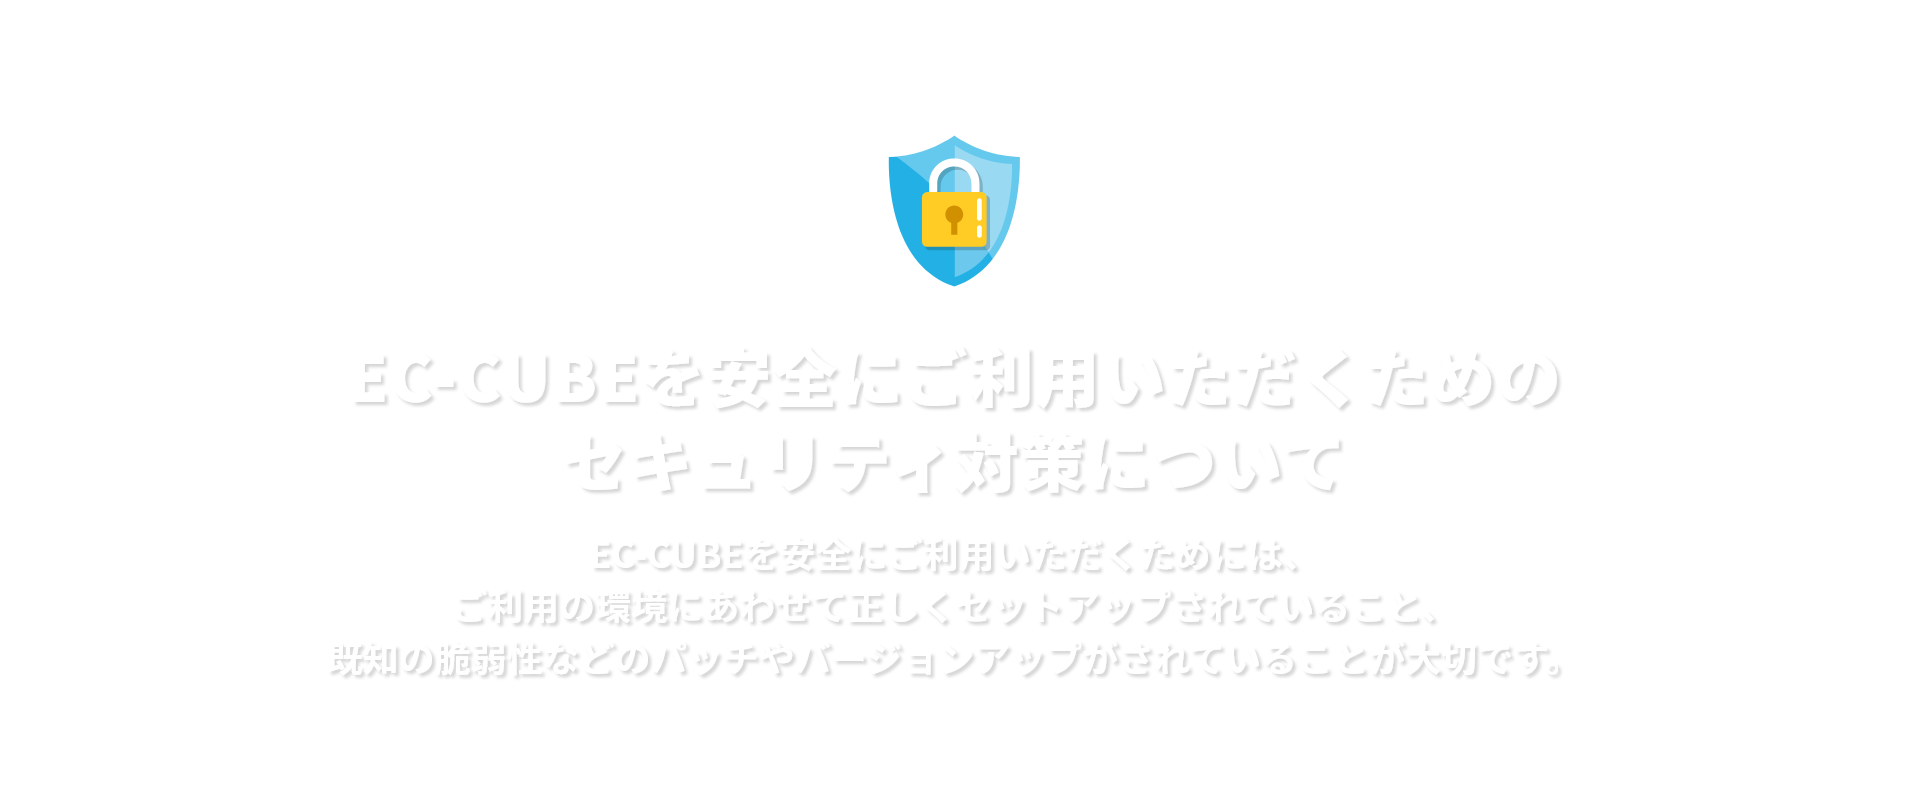 EC-CUBEを安全にご利用いただくためのセキュリティ対策についてEC-CUBEを安全にご利用いただくためには、ご利用の環境にあわせて正しくセットアップされていること、既知の脆弱性などのパッチやバージョンアップがされていることが大切です。